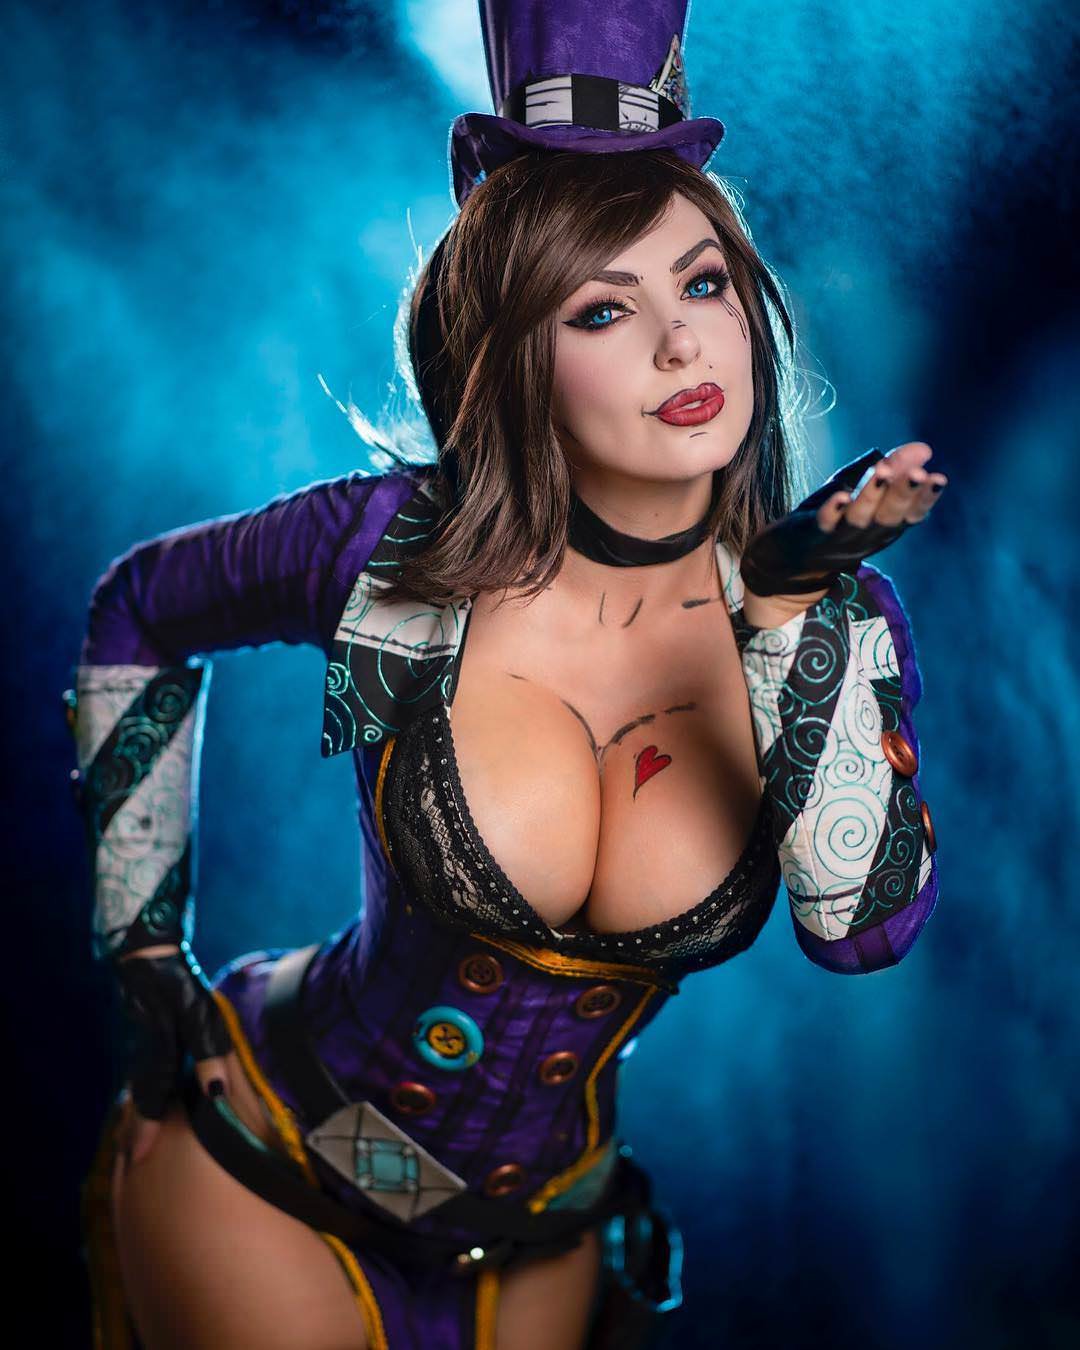 cosplay with big boobs